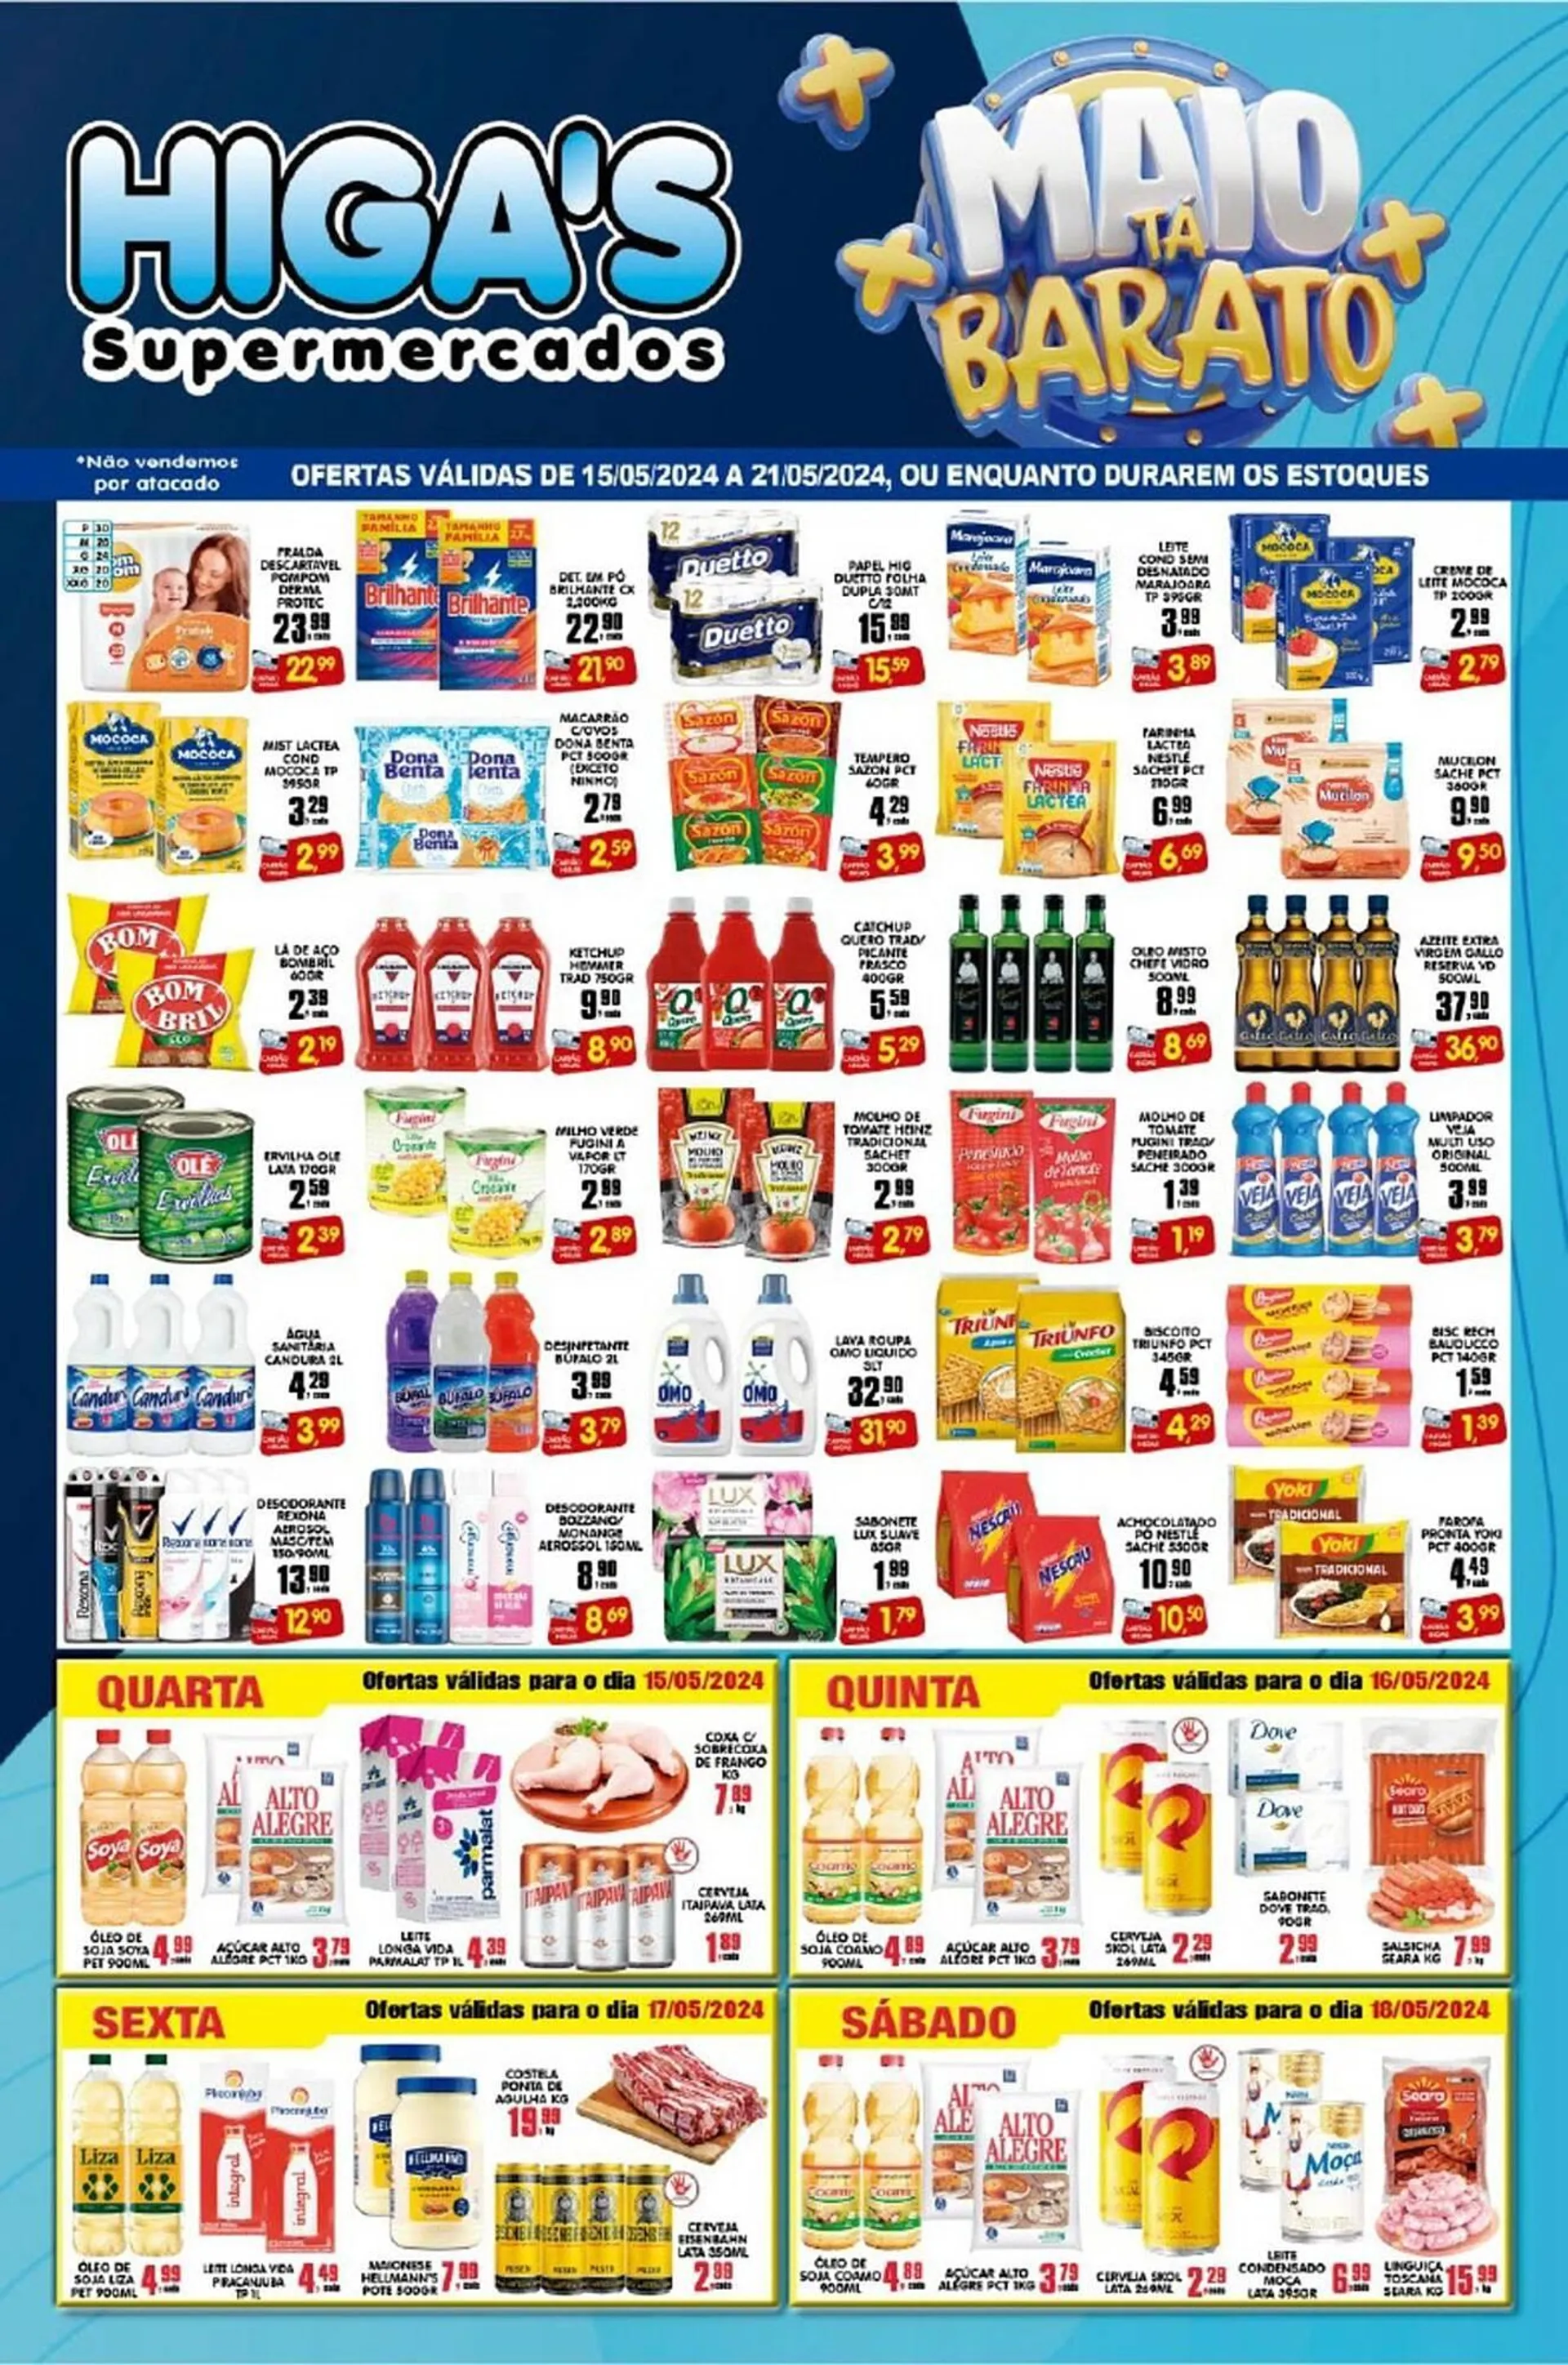 Catálogo Higas Supermercado - 1